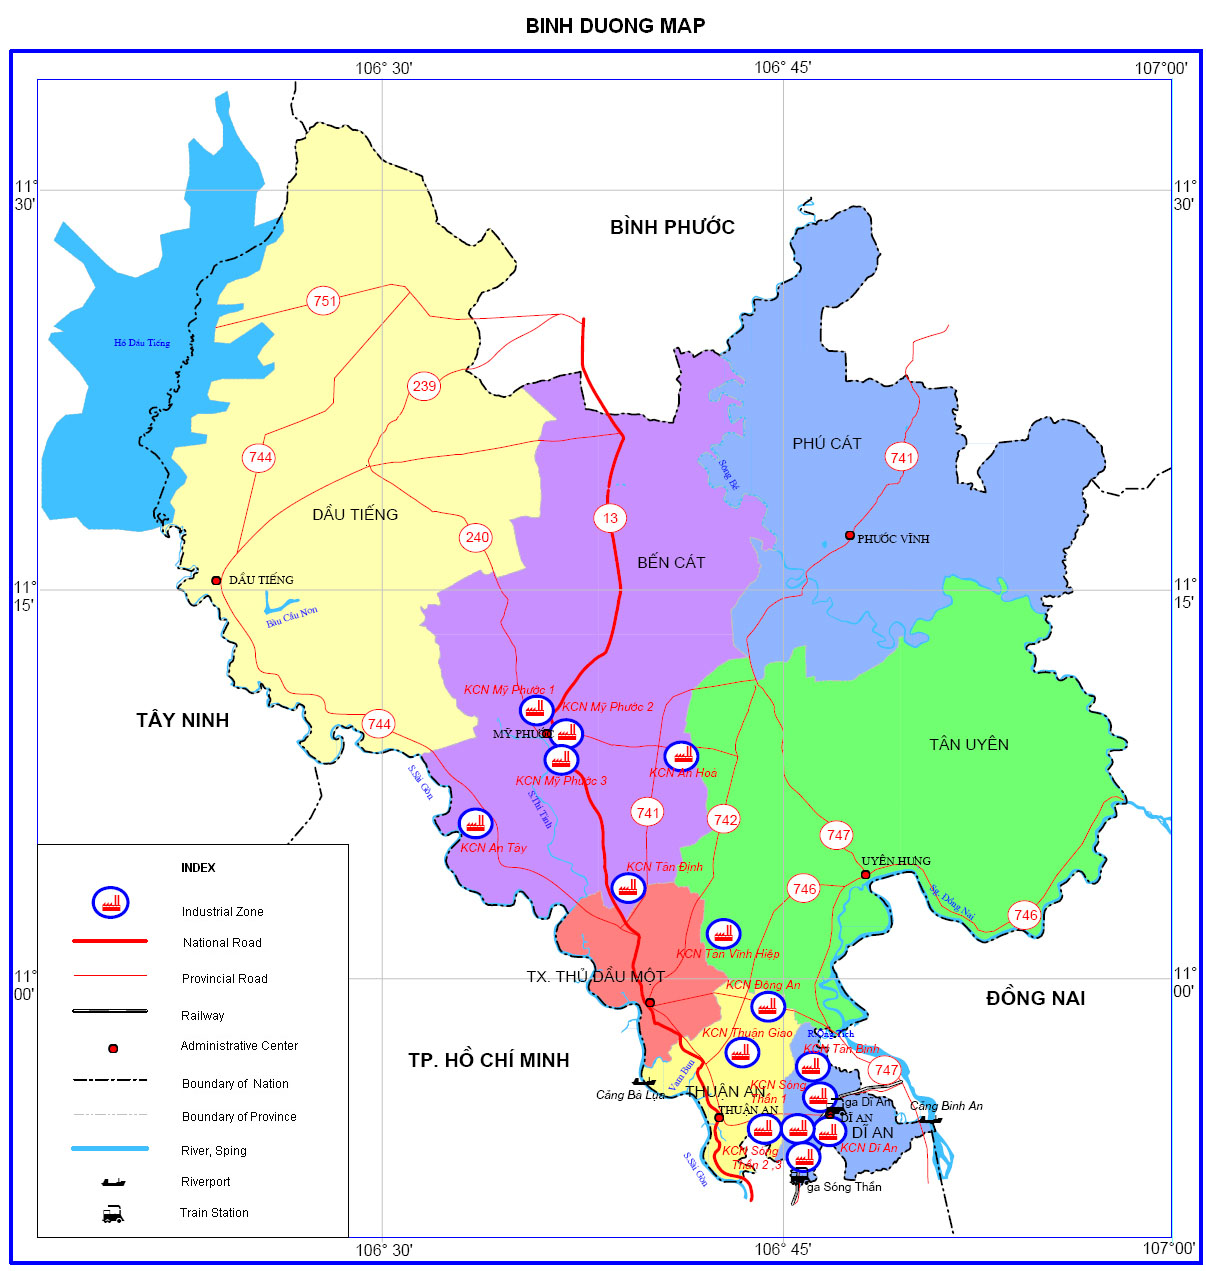 Bắc Tân Uyên hành chính 2024:
Đón xem tương lai rực rỡ của quận Bắc Tân Uyên với kế hoạch hành chính cho năm